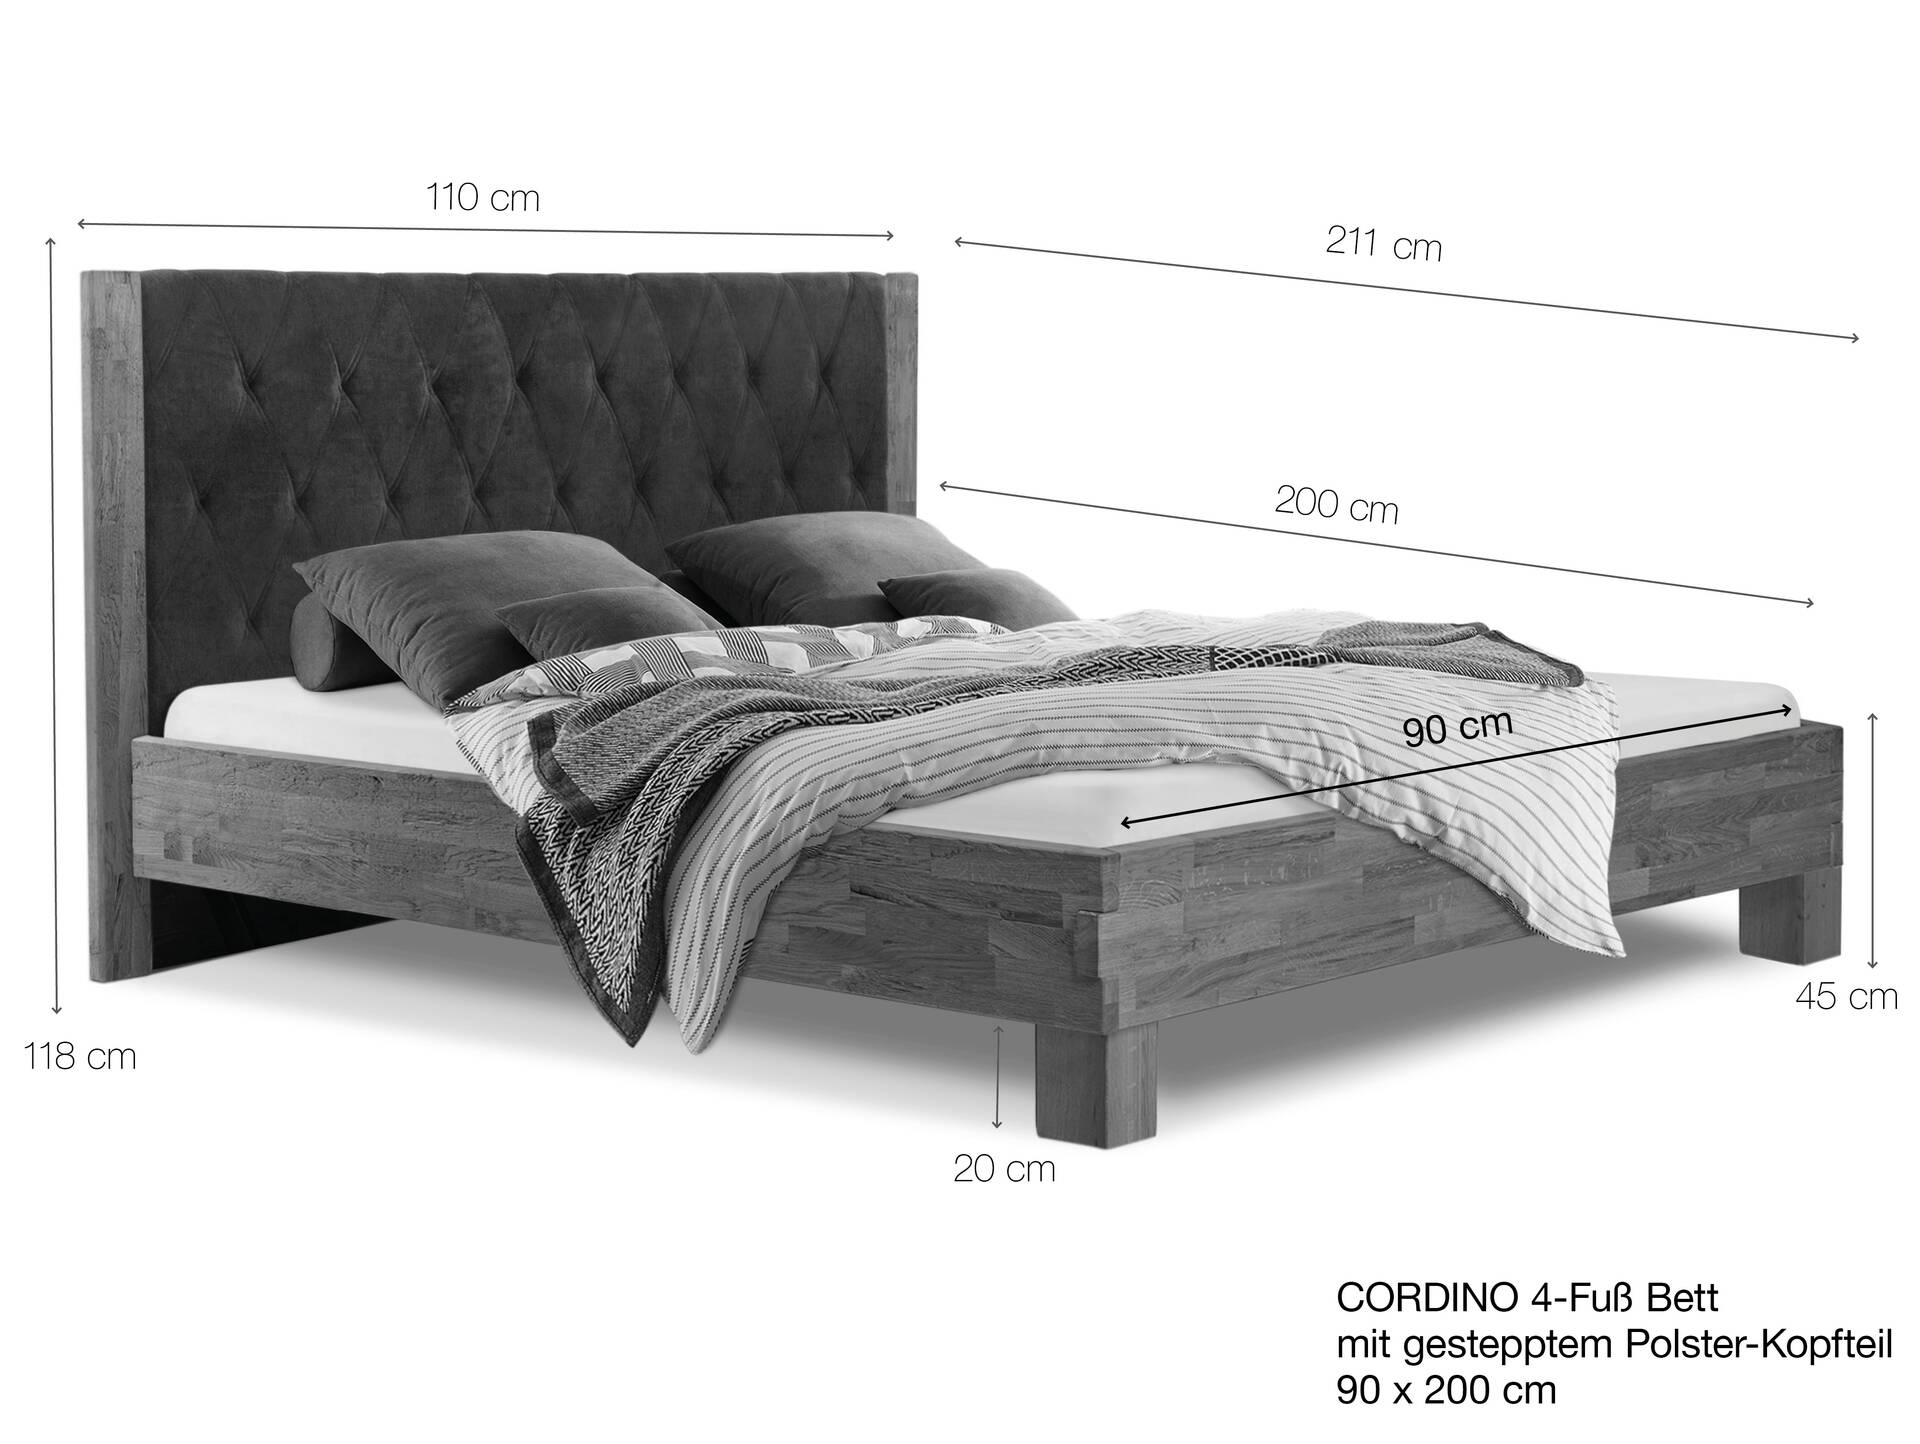 CORDINO 4-Fuß-Bett aus Eiche mit gestepptem Polster-Kopfteil, Material Massivholz 90 x 200 cm | Eiche lackiert | Stoff Anthrazit | gebürstet